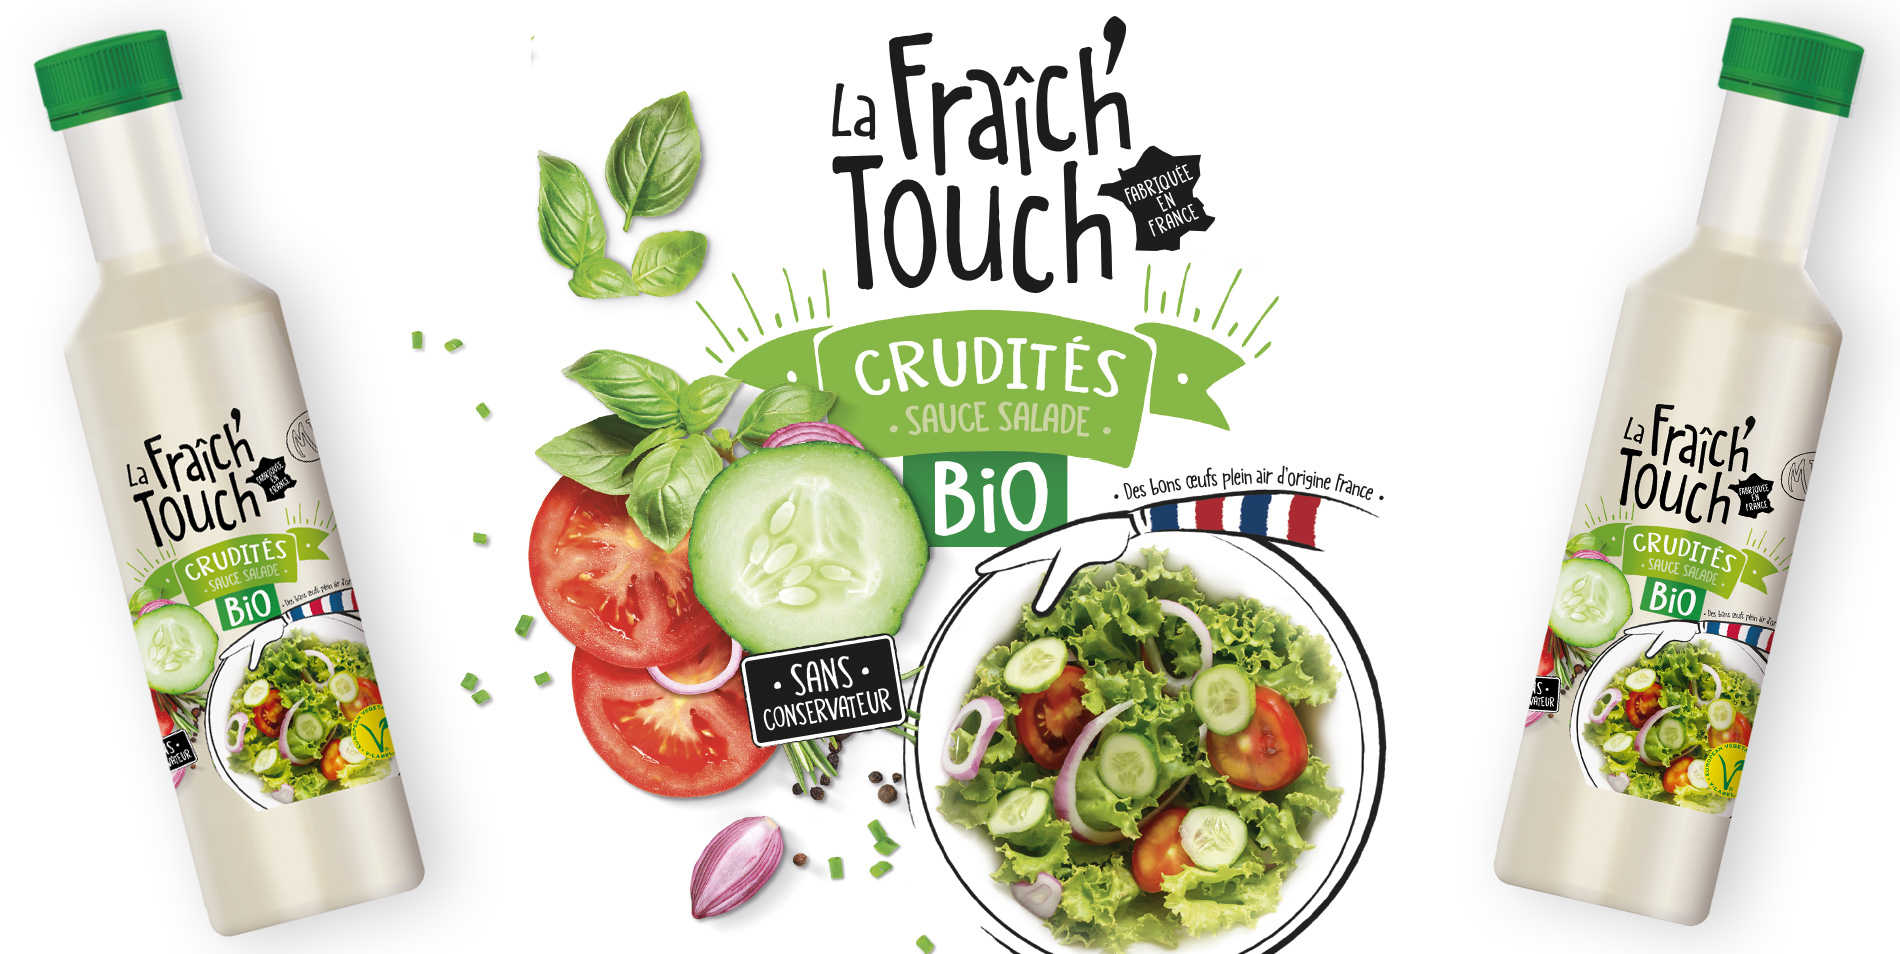 La Fraich'Touch sauce crudité bio